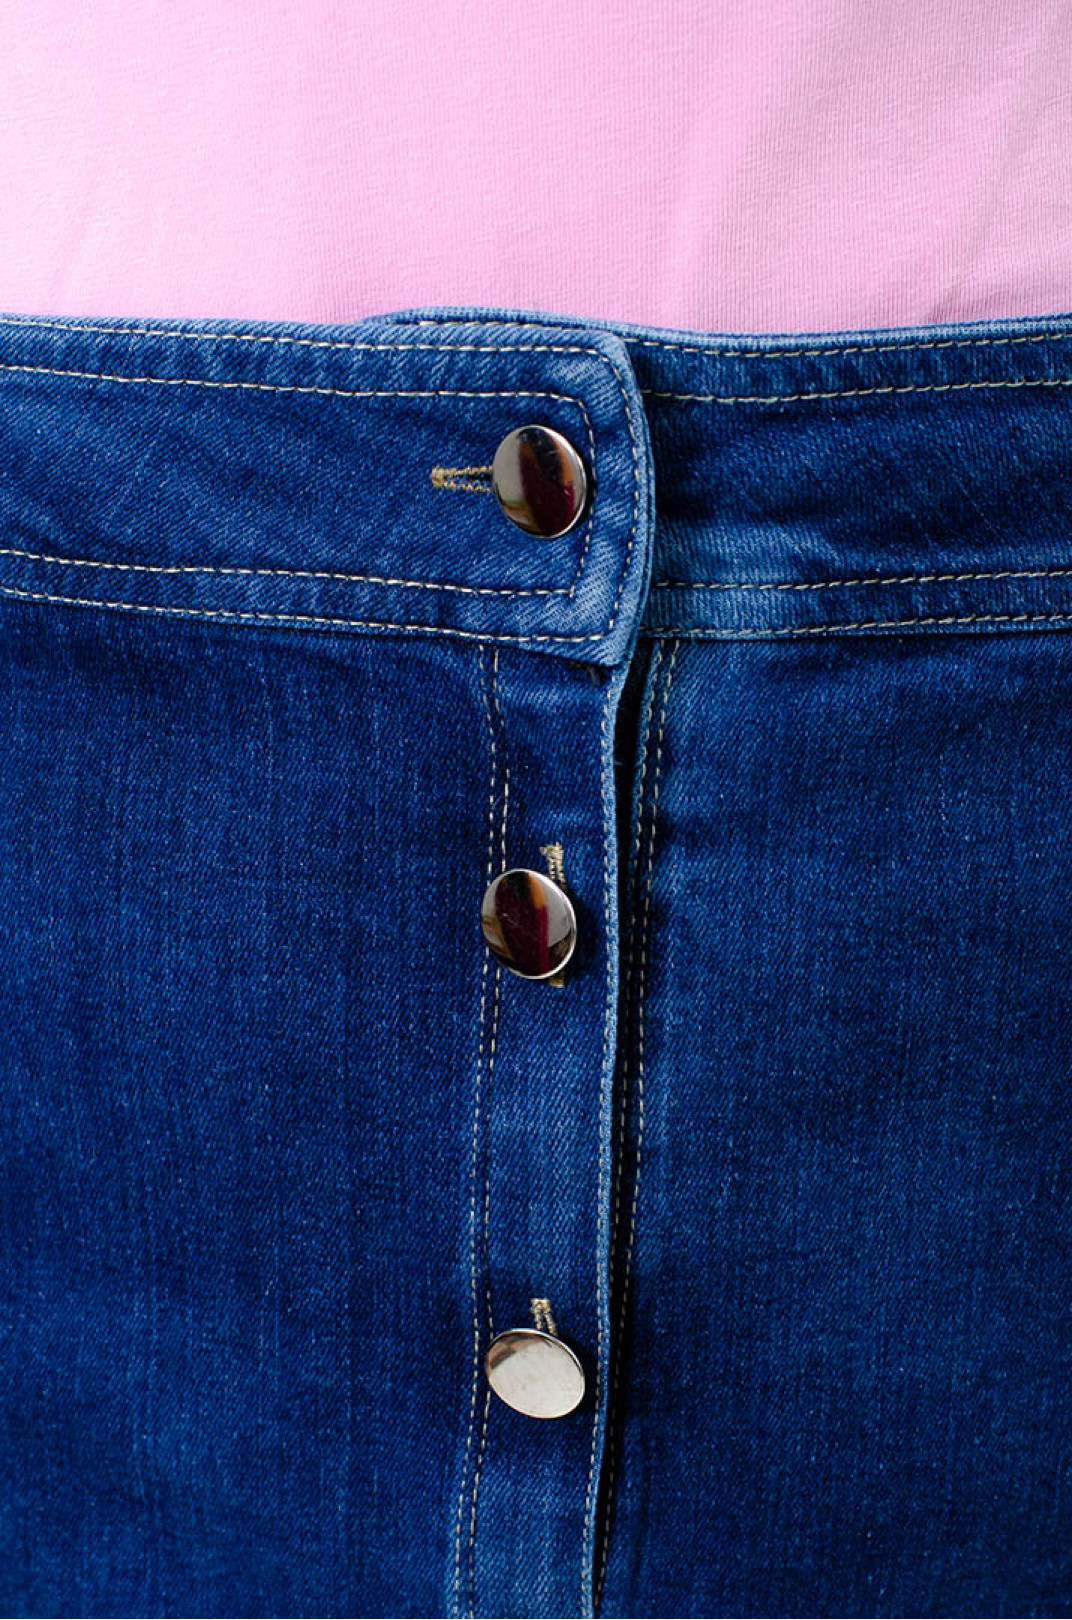 Юбка джинсовая макси на пуговицах батал